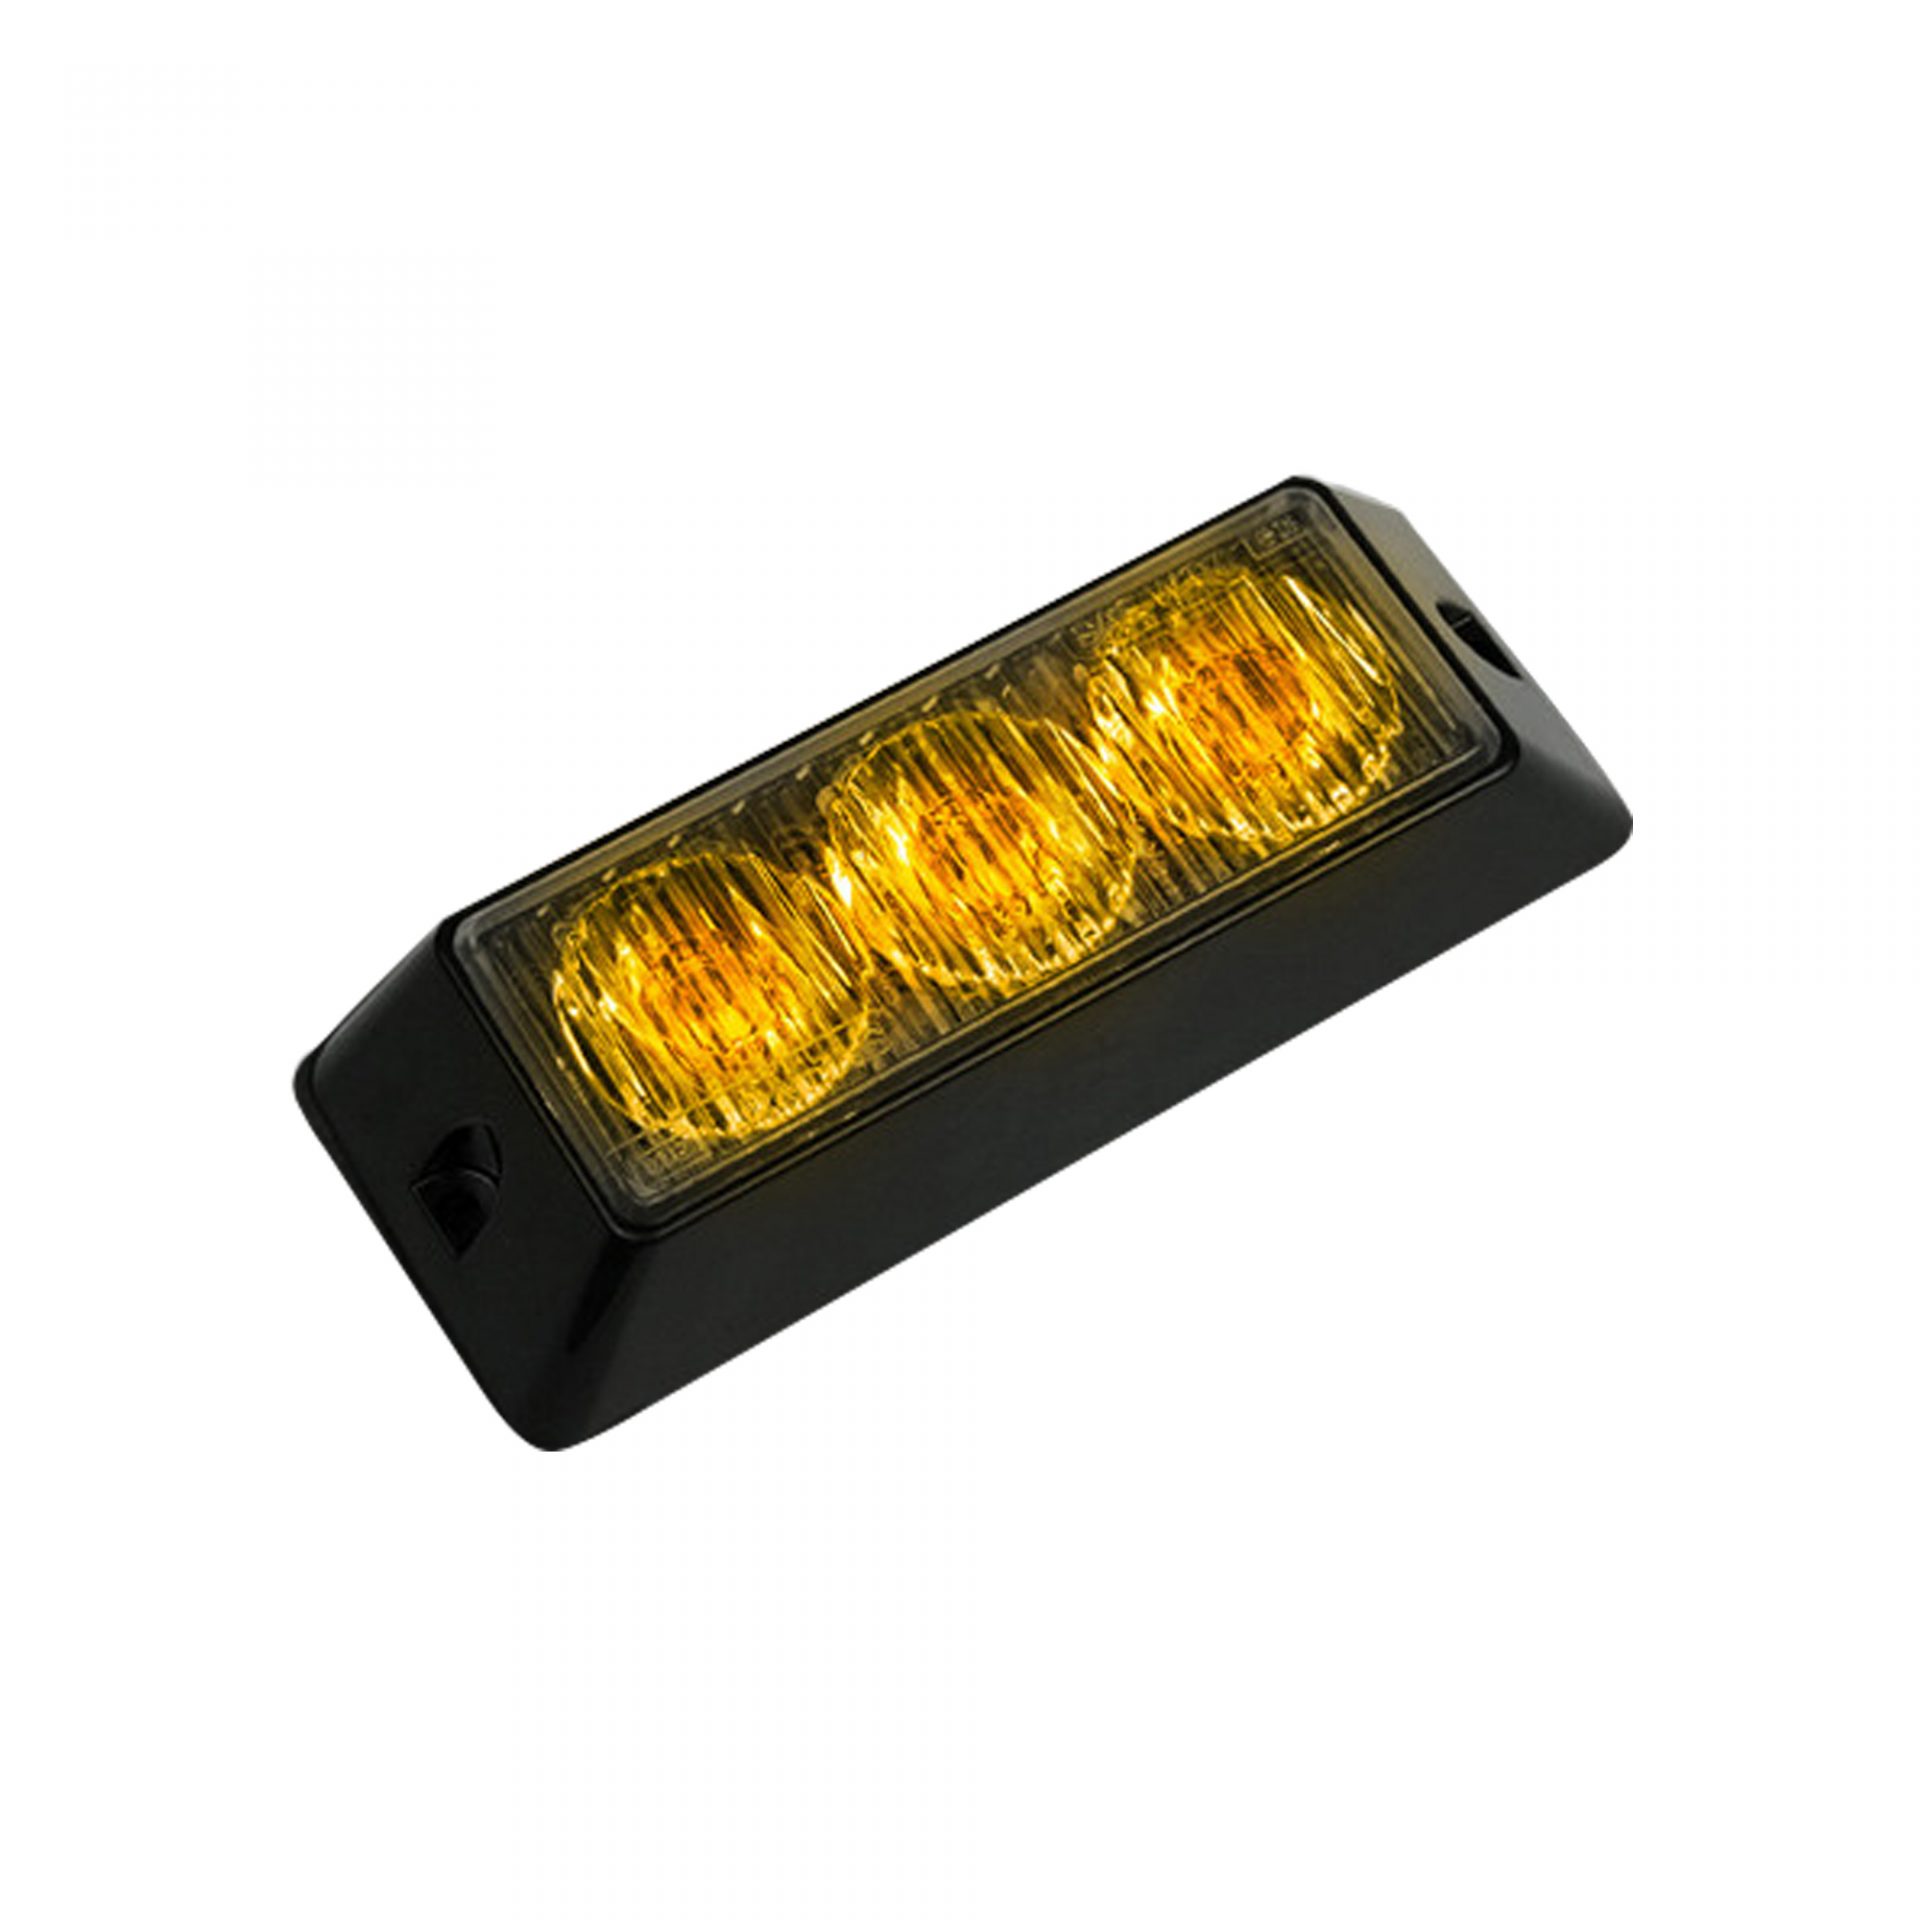 3-LED 12 Function 3-Watt High-Intensity Strobe Light Module w Black Base - Amber Color